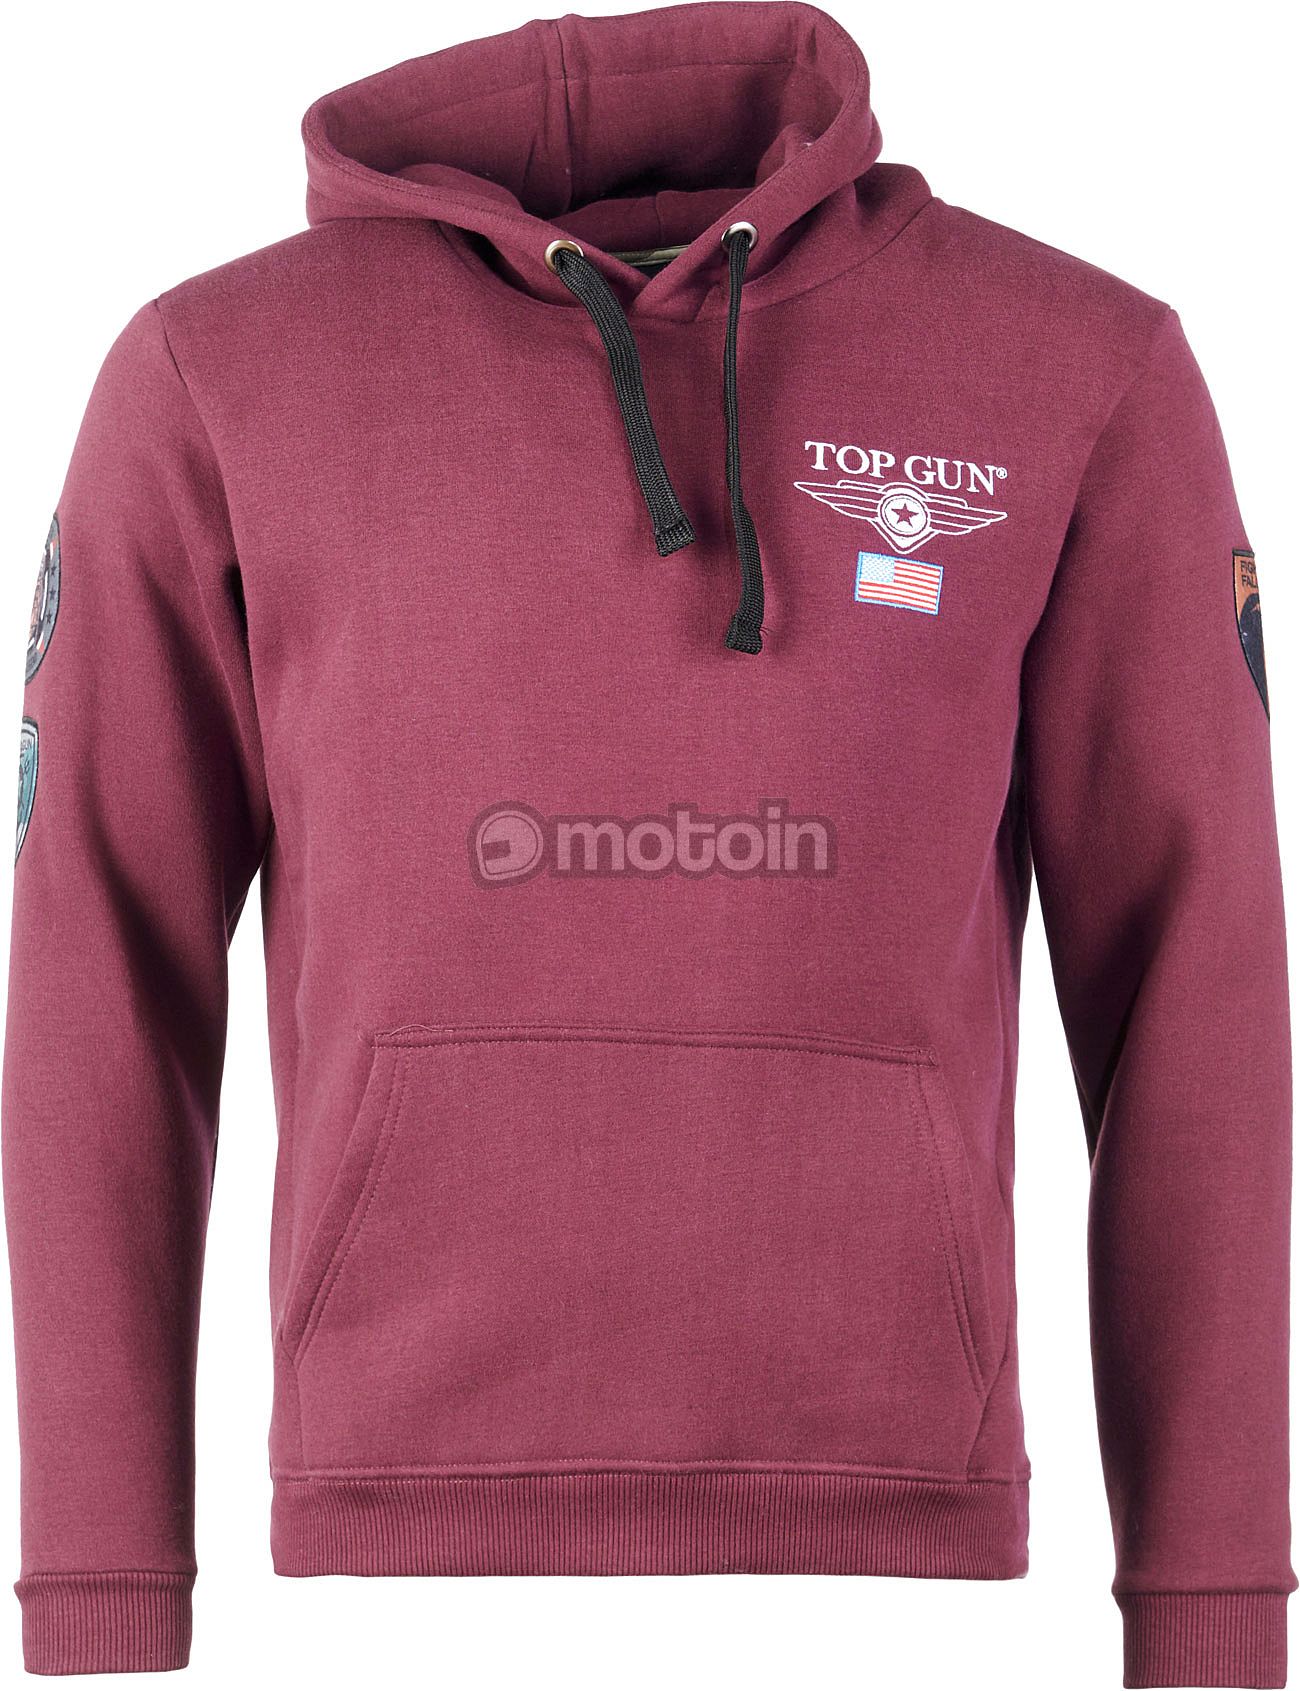 Top Gun 3130, hoodie